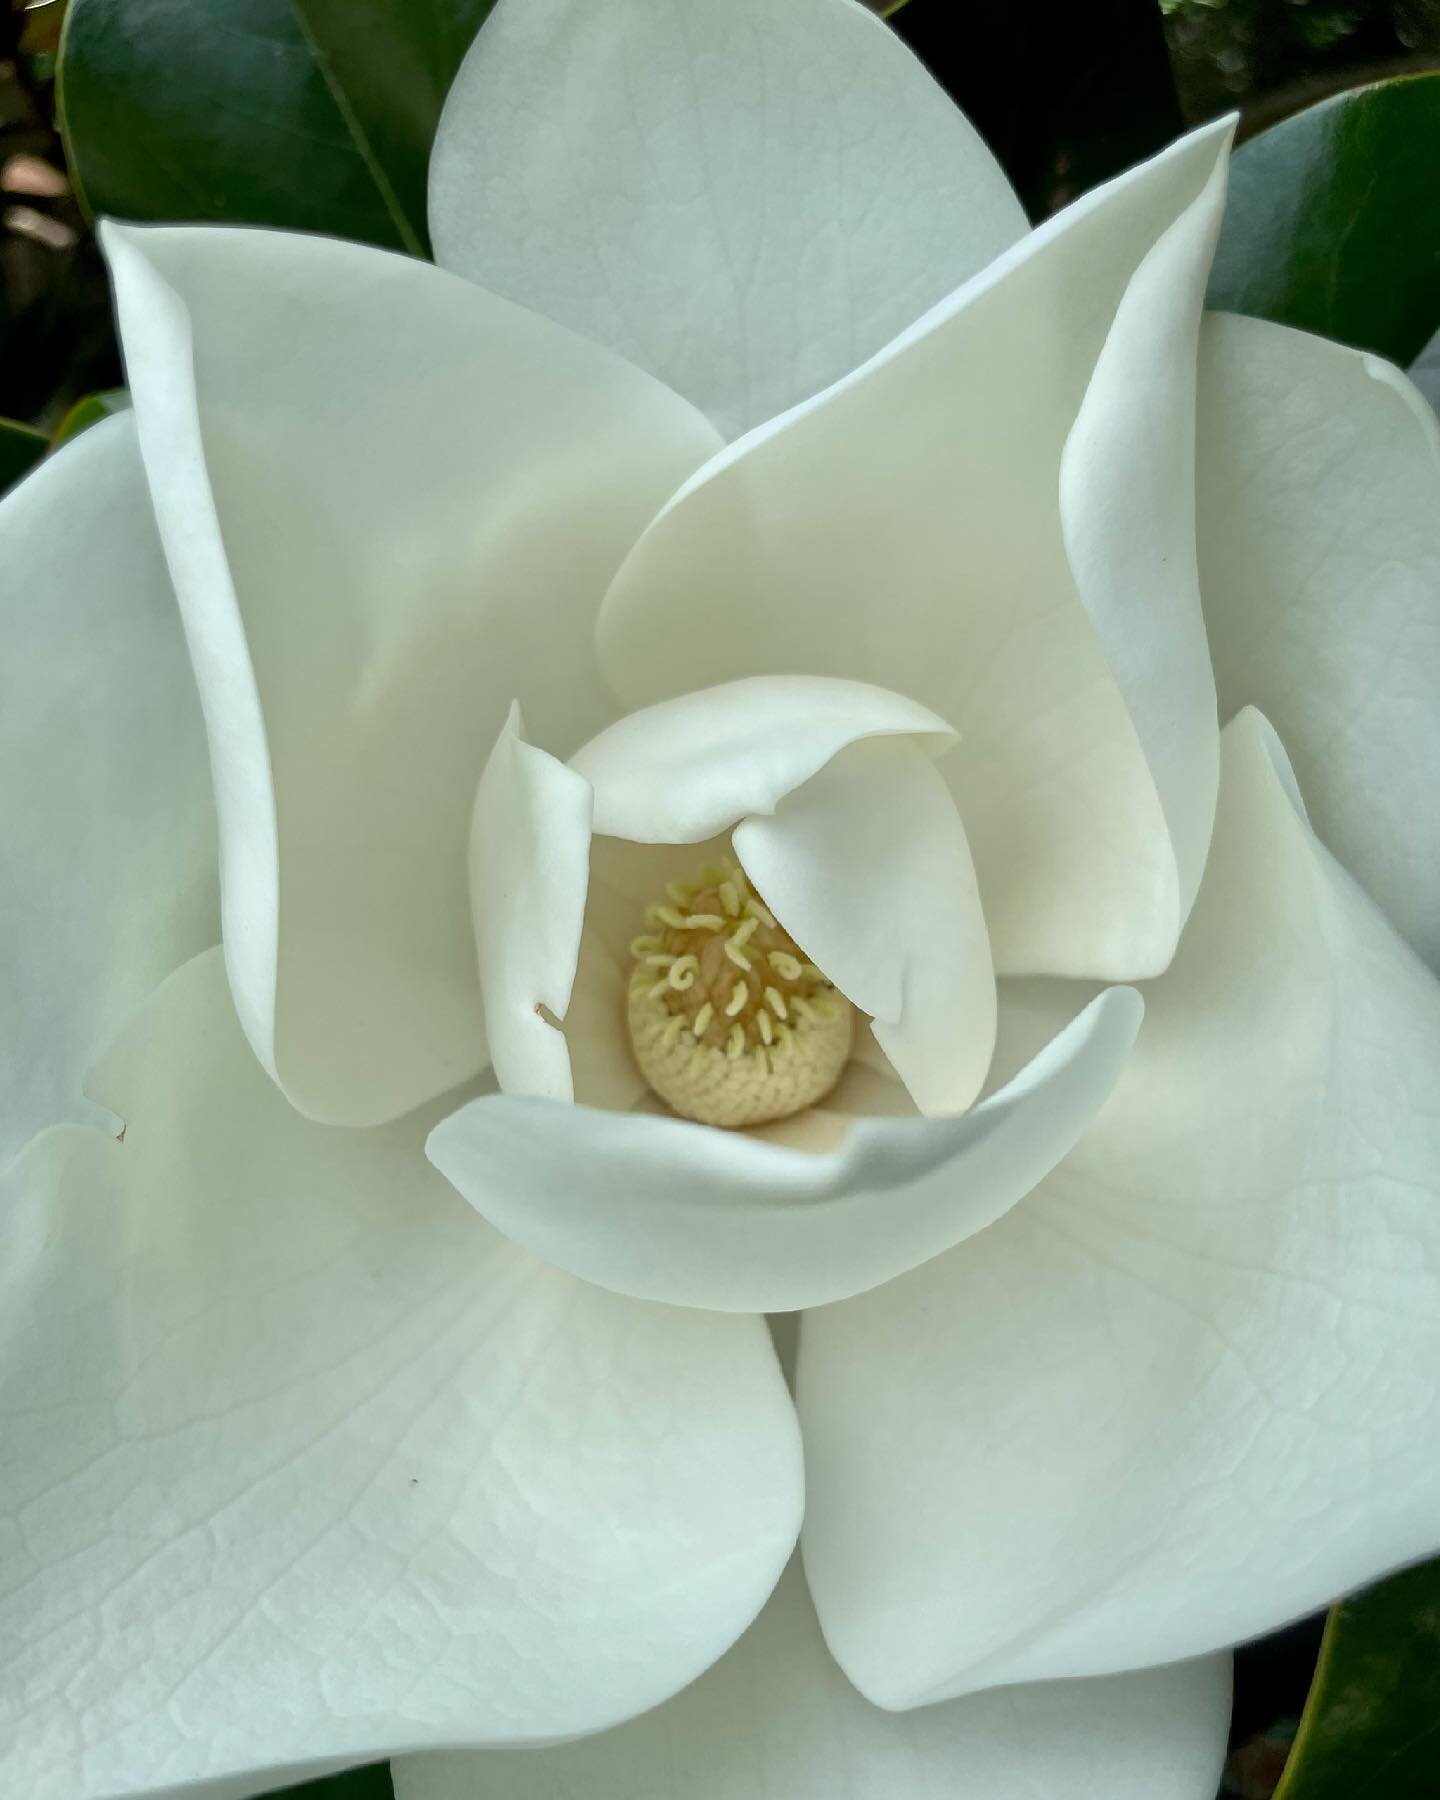 .
Magnolia Bloom.
.
Pure sweetness.
.
#magnoliabloom #flowersofinstagram #seebeauty